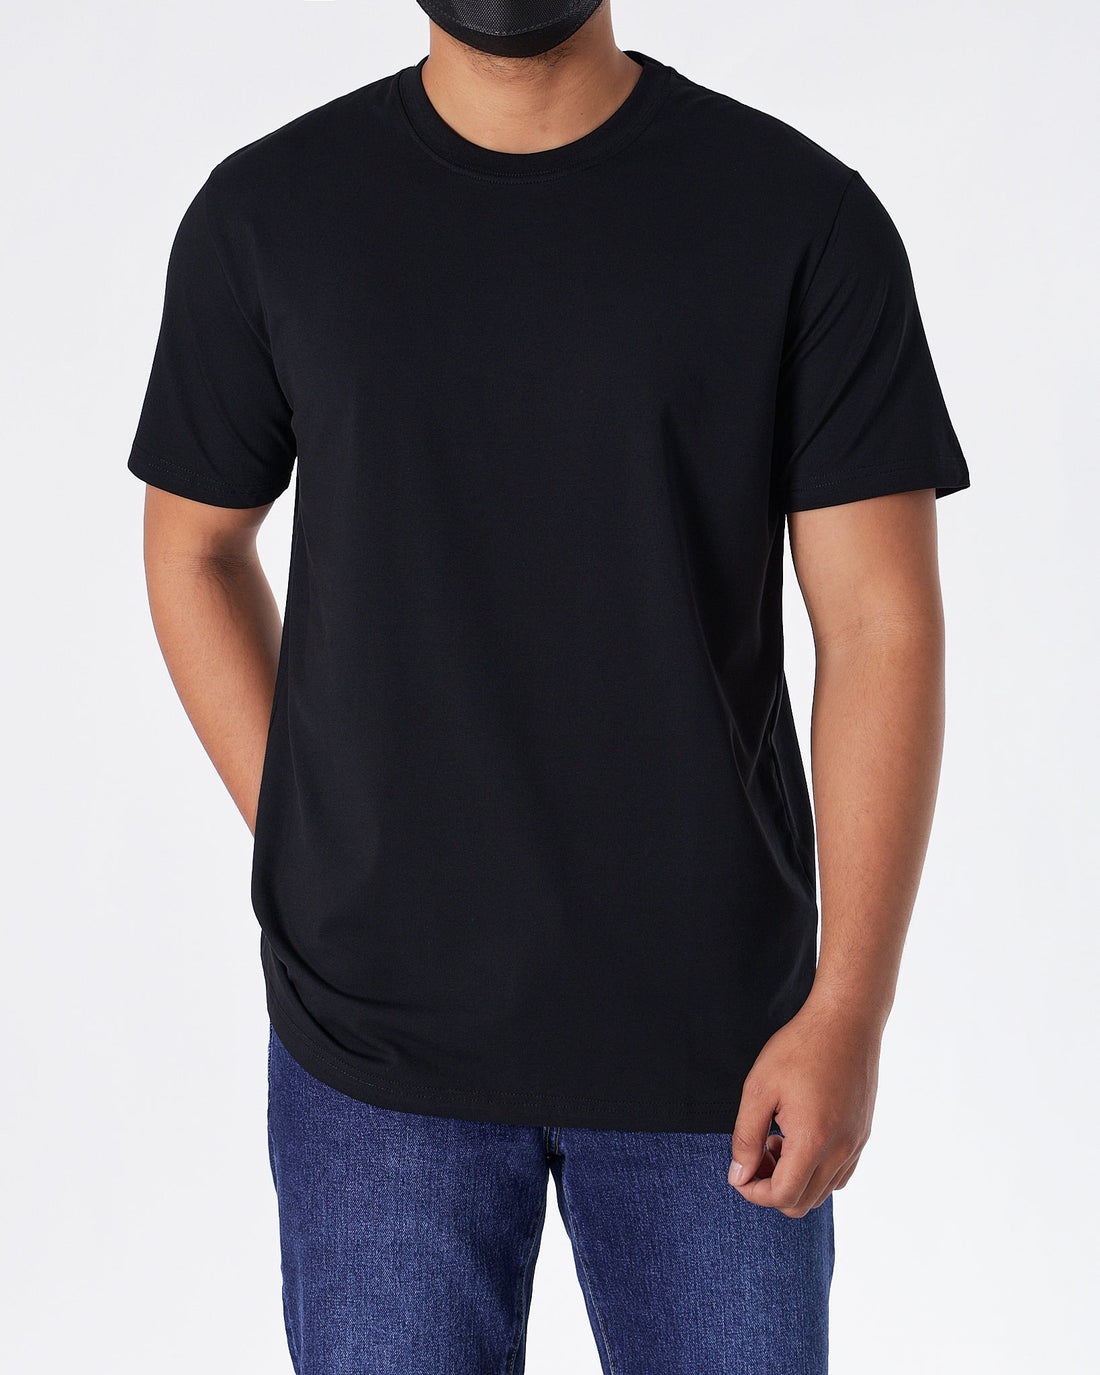 MOI OUTFIT-ABA Plain Color Men Black T-Shirt 14.90